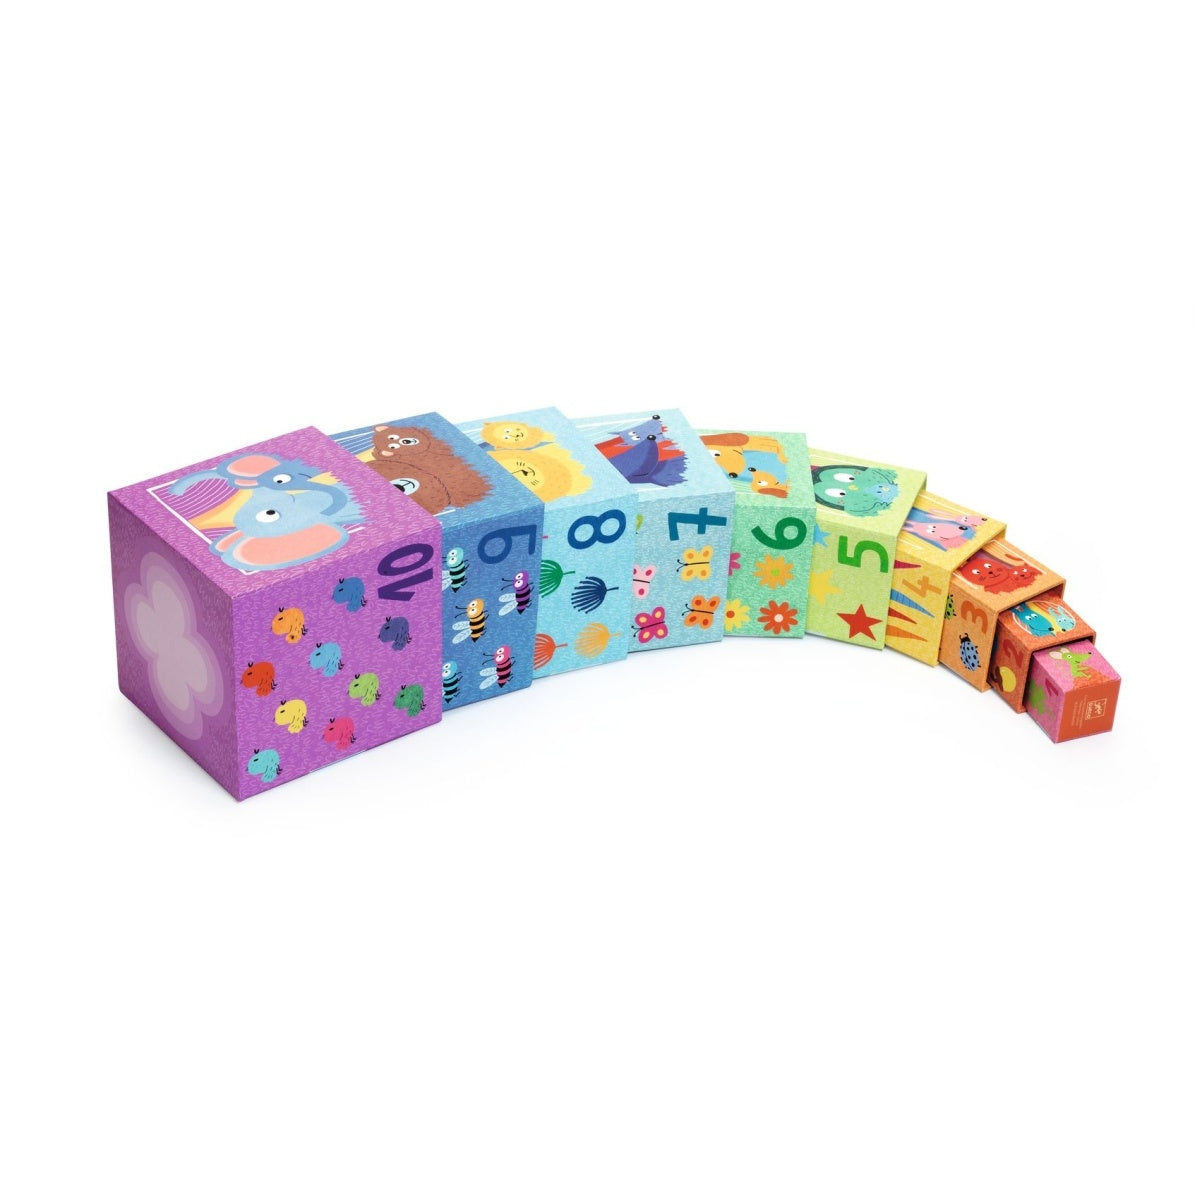 Stapelwürfel in den Farben des Regenbogens  10 dicke Pappwürfel zum Ineinanderstecken, Stapeln und Ablegen nach Belieben! Das Kind stapelt die Würfel so, dass die Abbildungen eine logische Reihenfolge bilden.